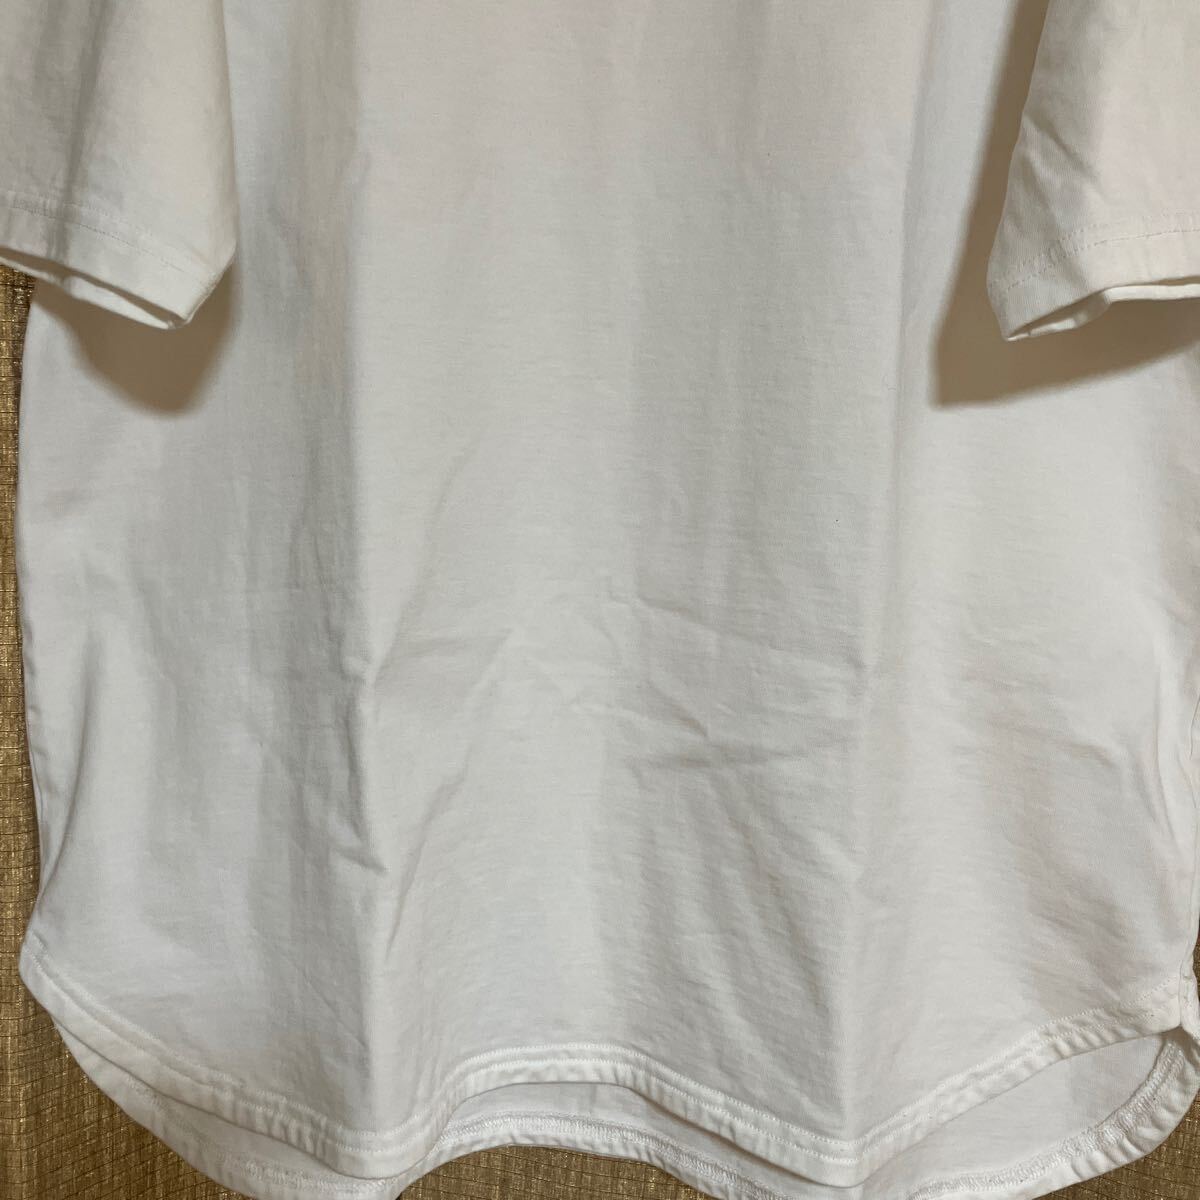 Jackman ジャックマン Tシャツ T-Shirt 白 L 日本製 美品☆ヤフネコ!無料